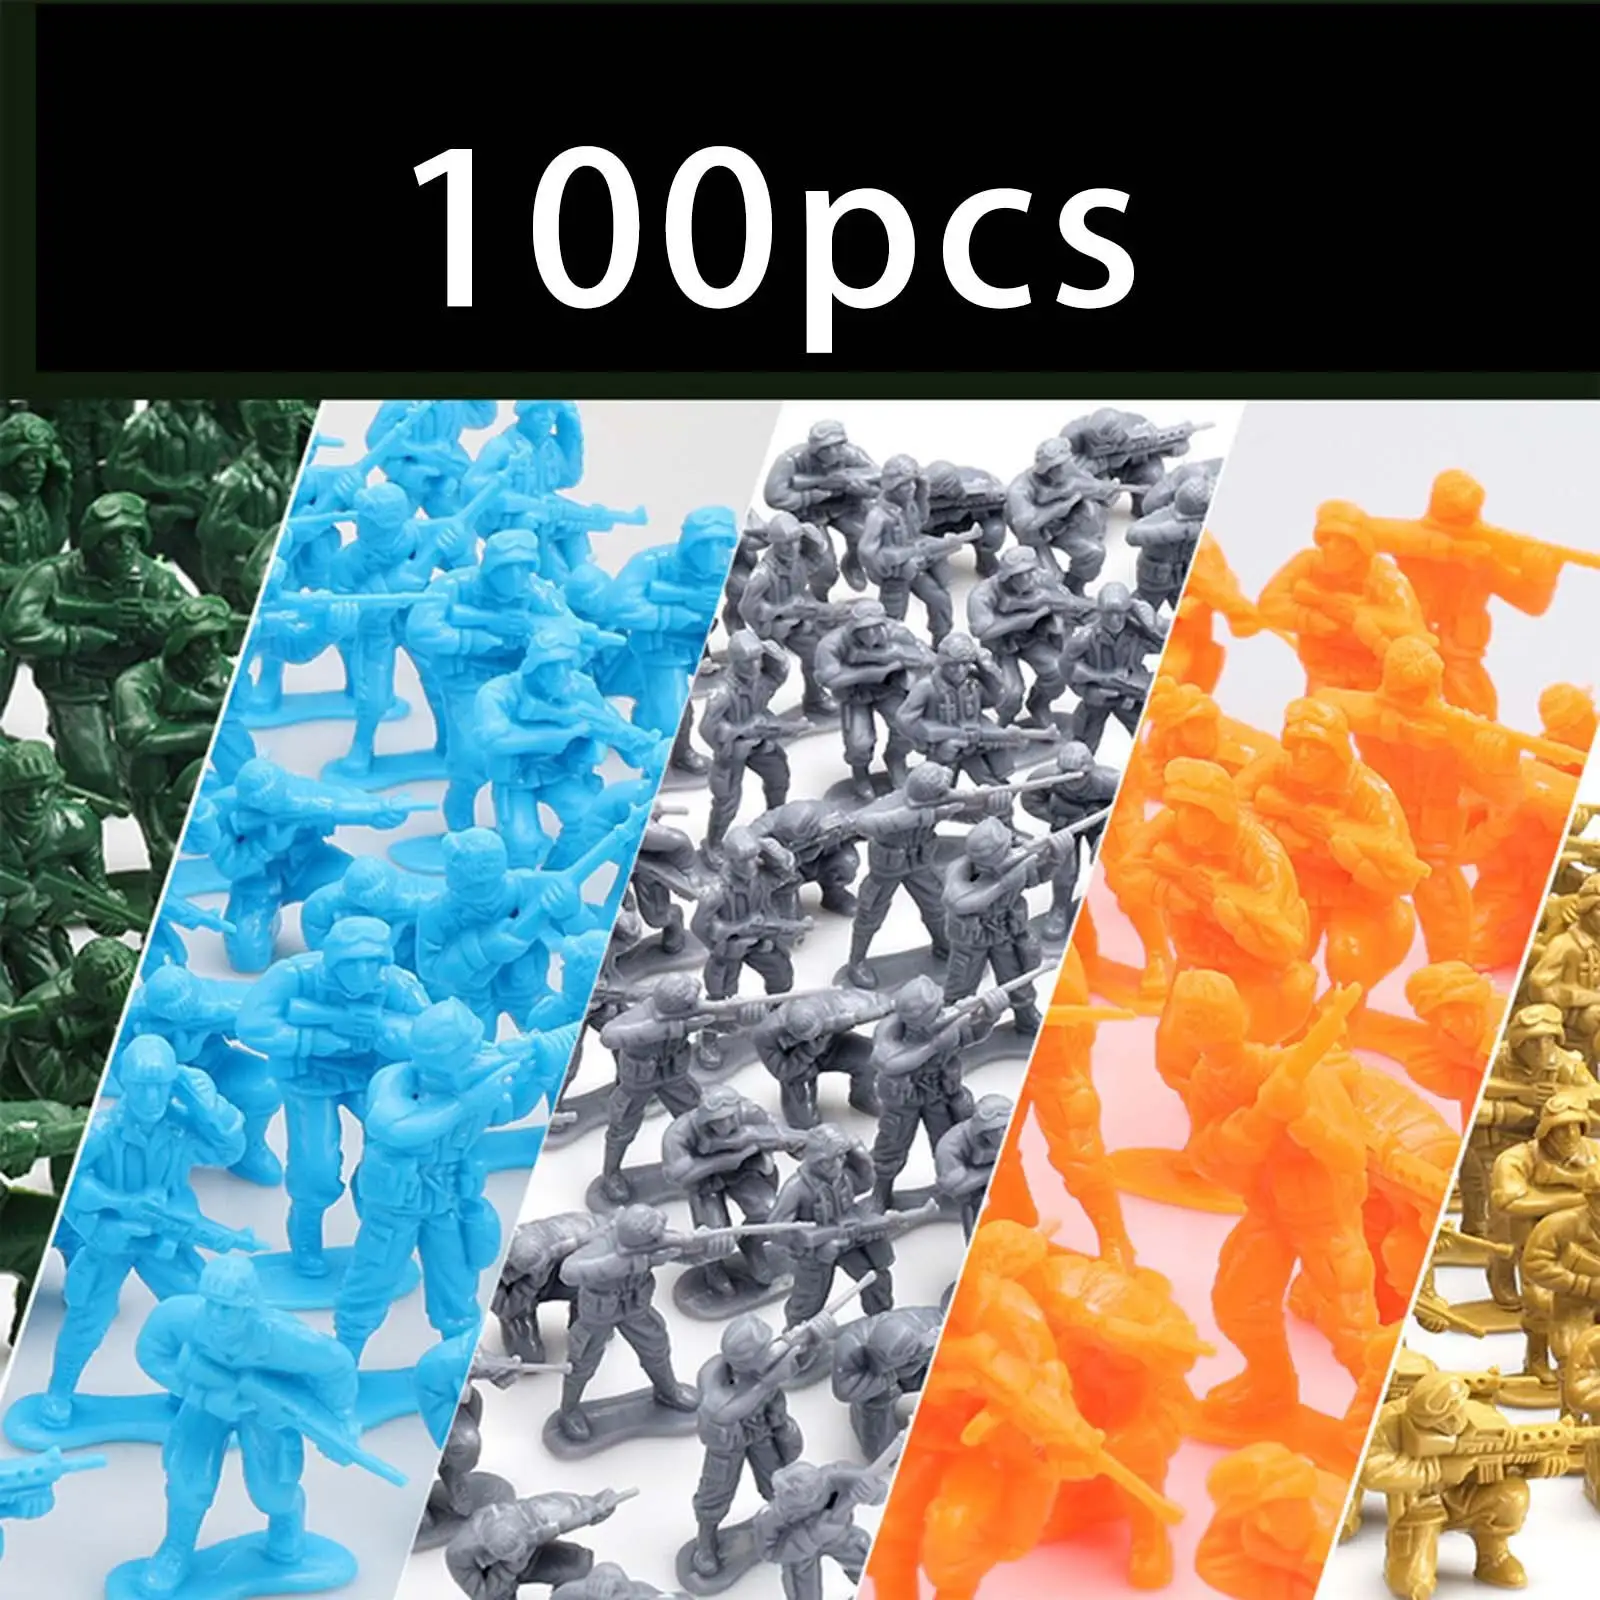 100 Adet Figürler model seti Bilimsel Yeterli Pratik Oyunlar için Hediye